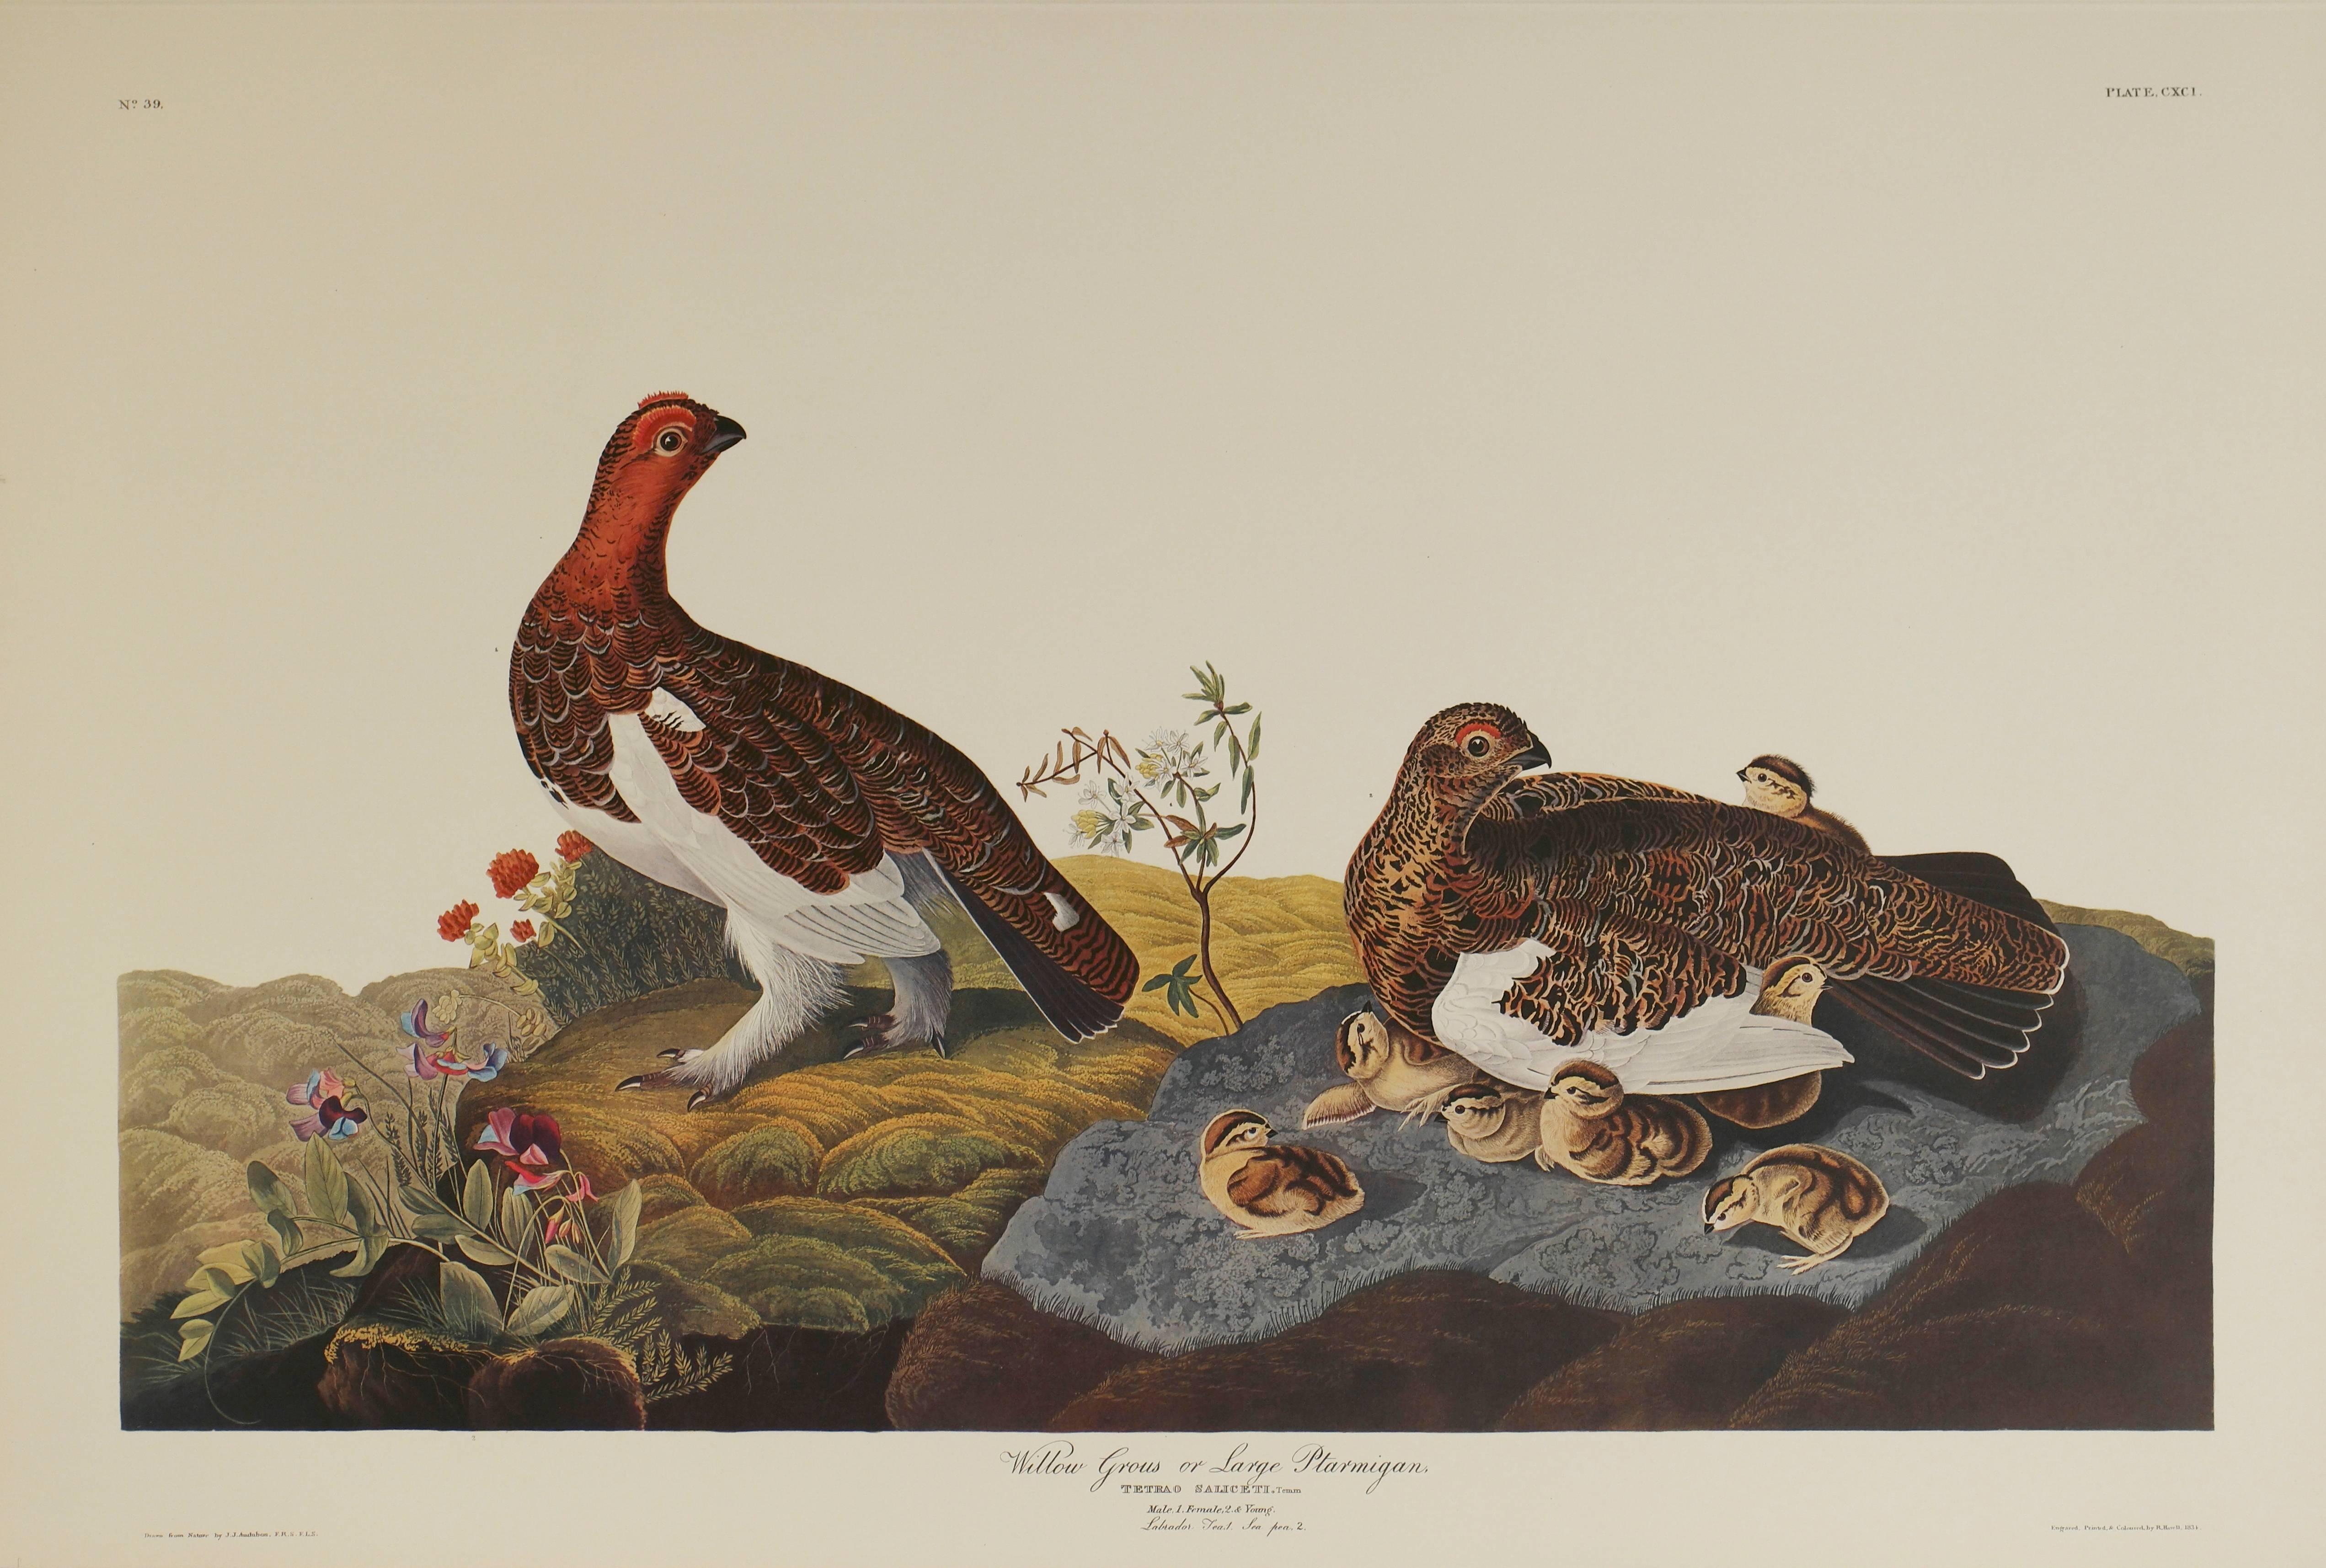 John James Audubon Animal Print - Willow Grous or Large Ptarmignan 